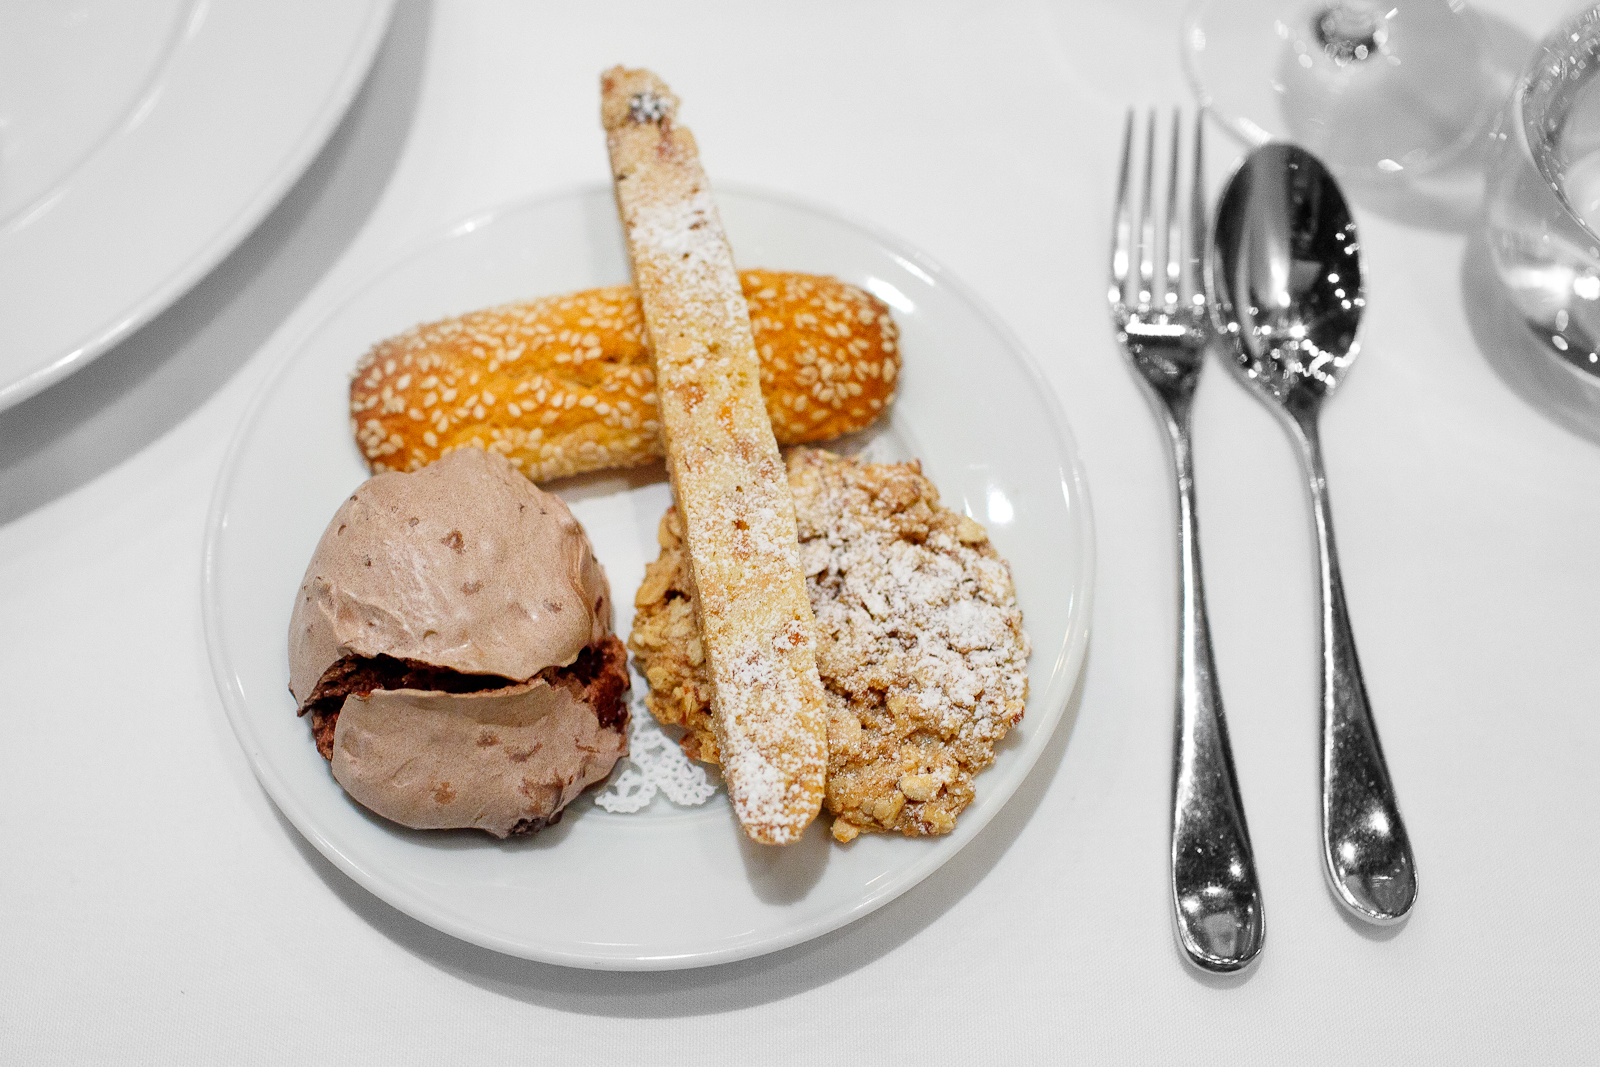 8th Course: Biscotti - apricot-almond biscotto, amaretti, chocolate meringue, sesame